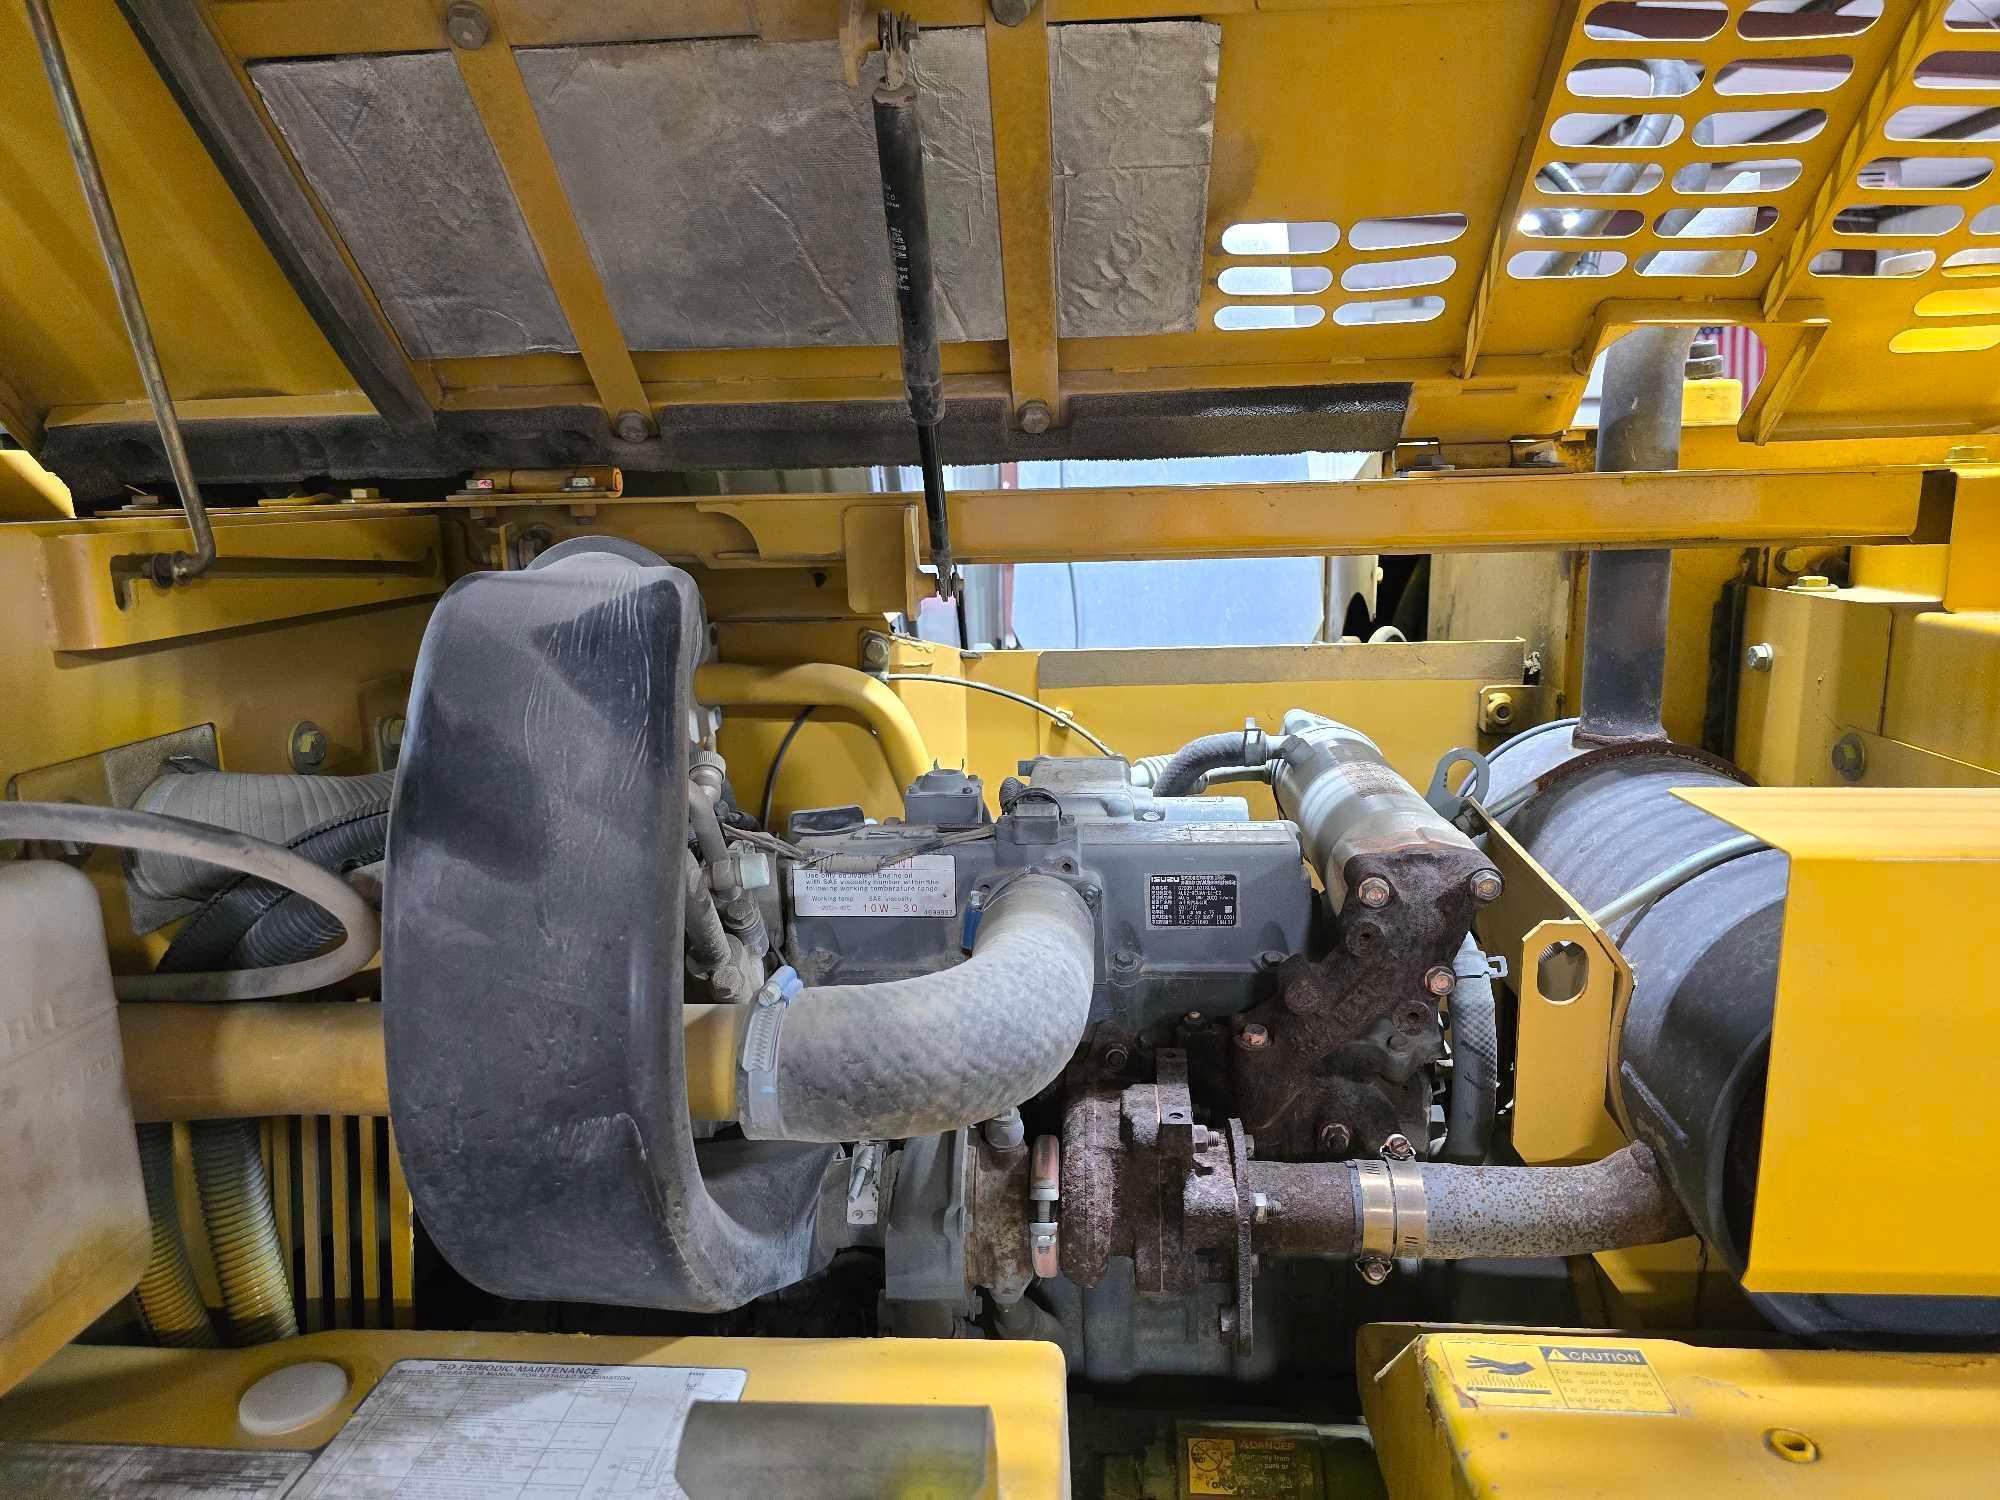 2012 John Deere 75D Hydraulic Excavator